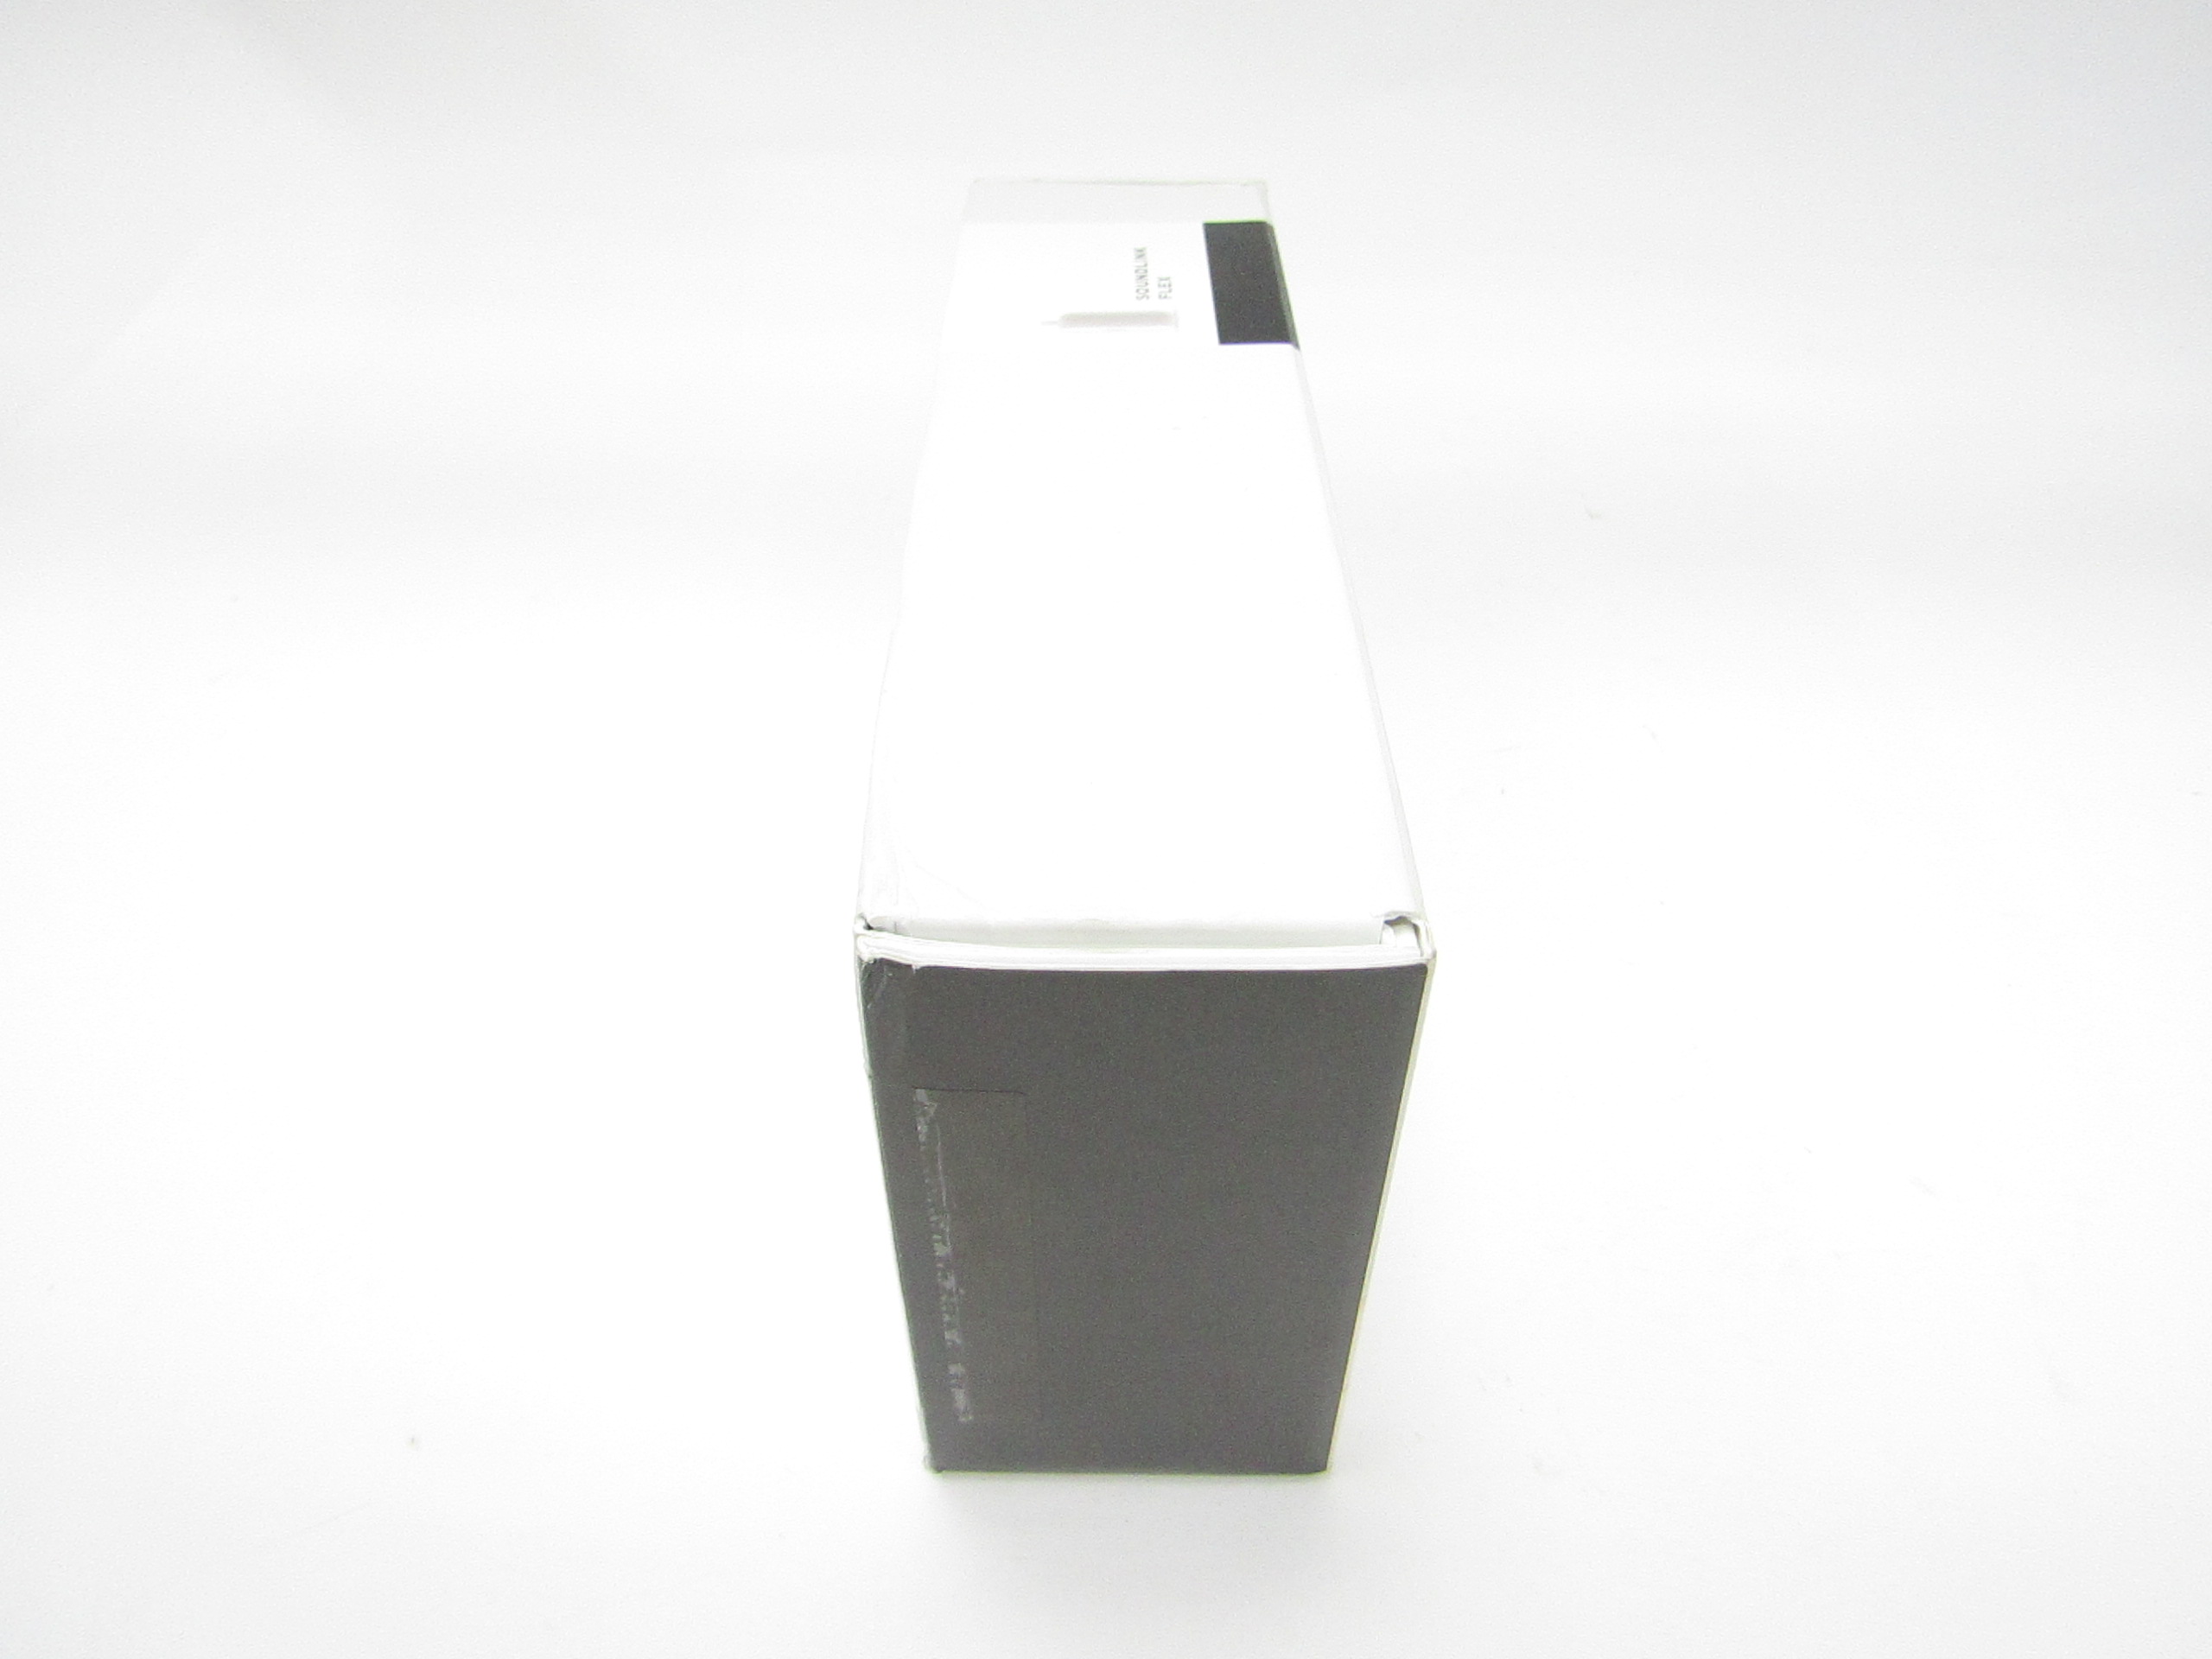 SoundLink Flex Bose Portable Speaker - 865983-0500